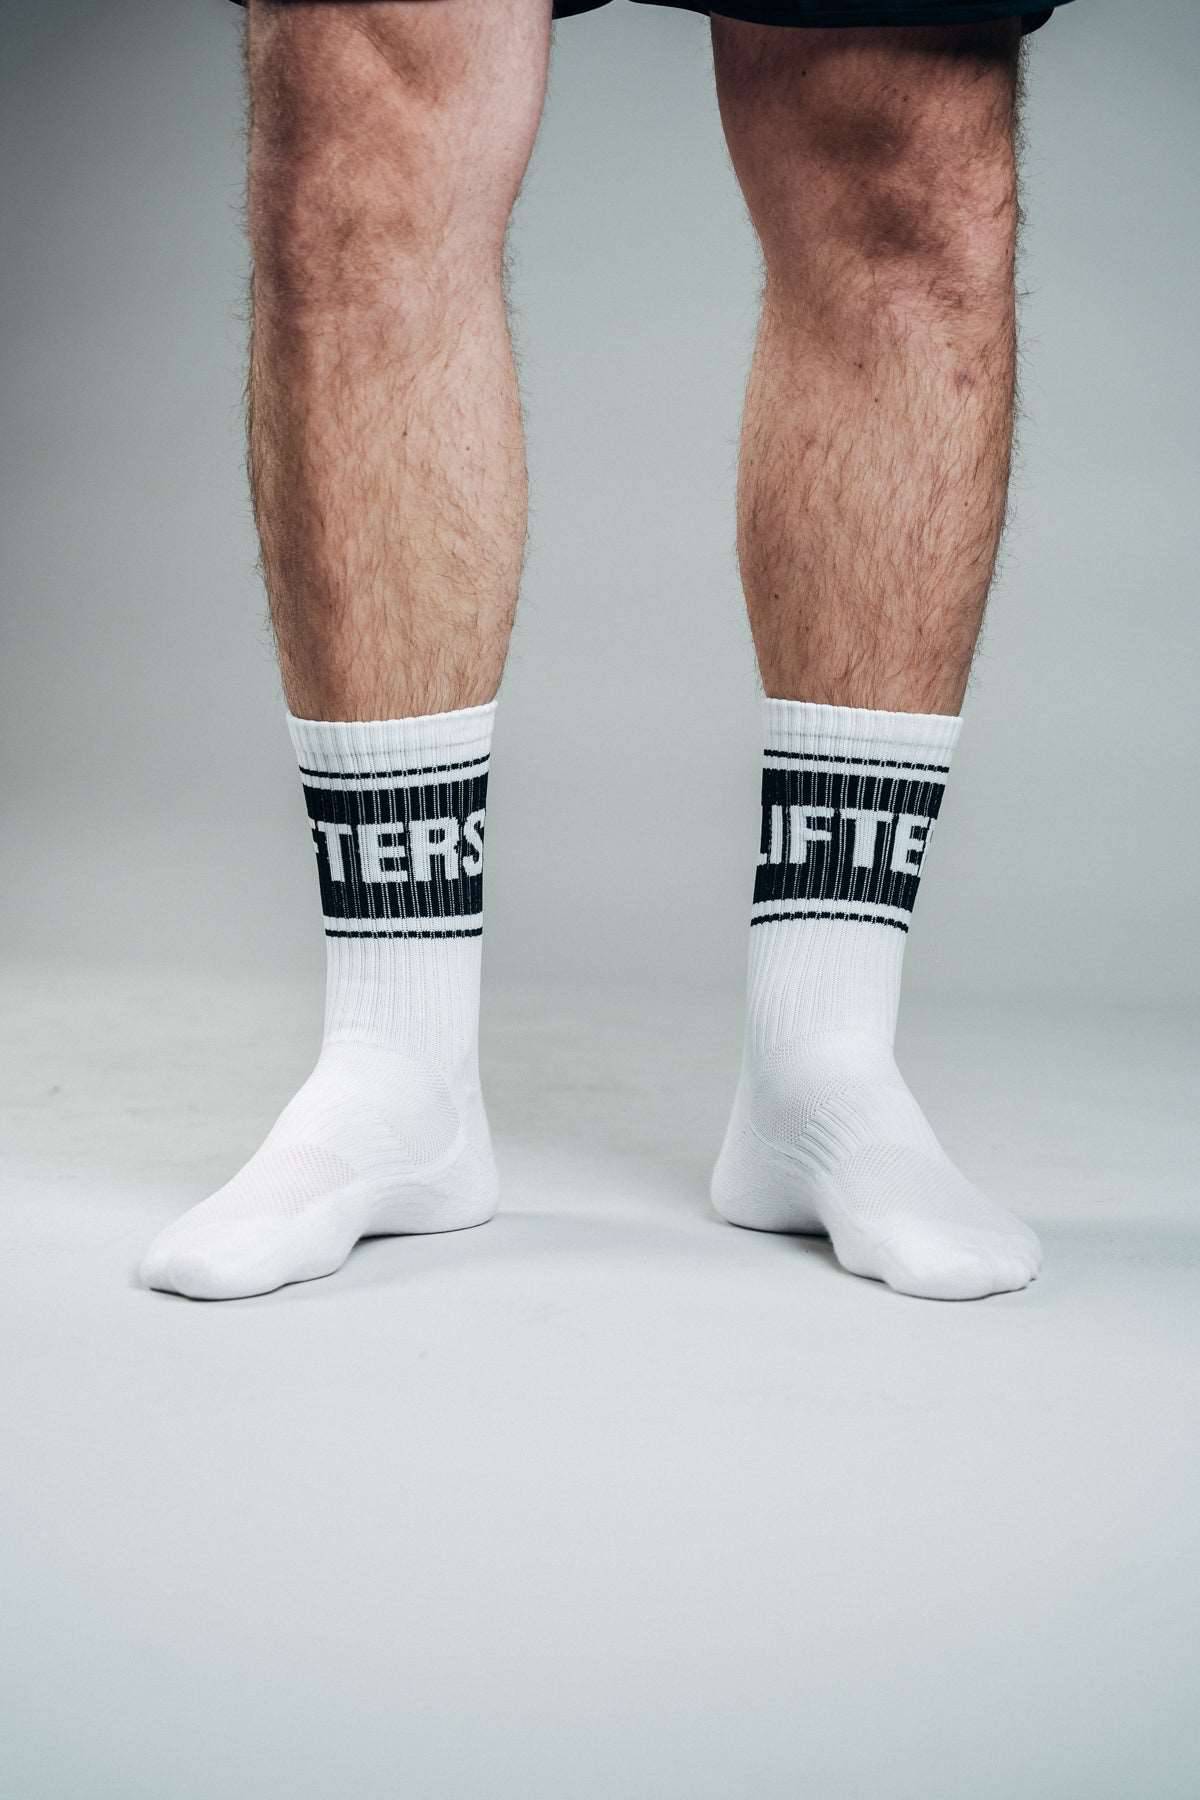 Performance Socks Bundle (3 Pack) Lifters Wear 